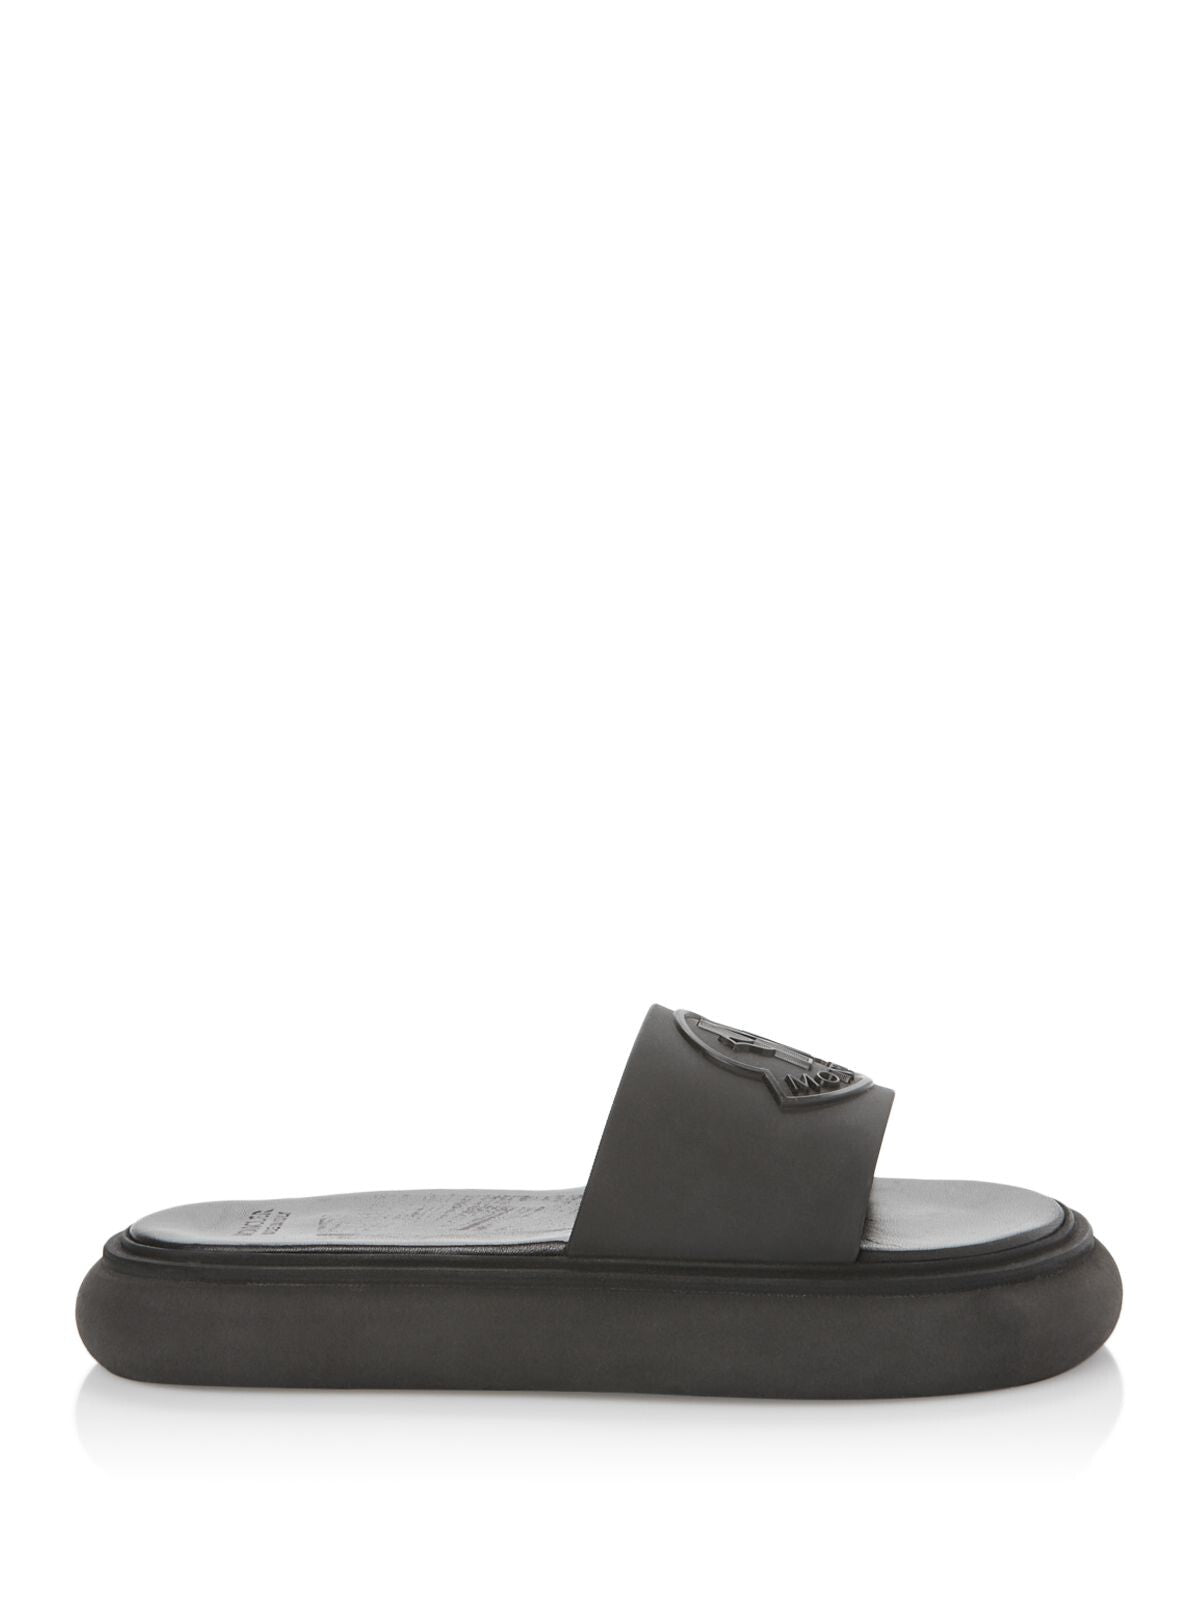 MONCLER Womens Black Logo Slyder Round Toe Platform Slip On Slide Sandals Shoes